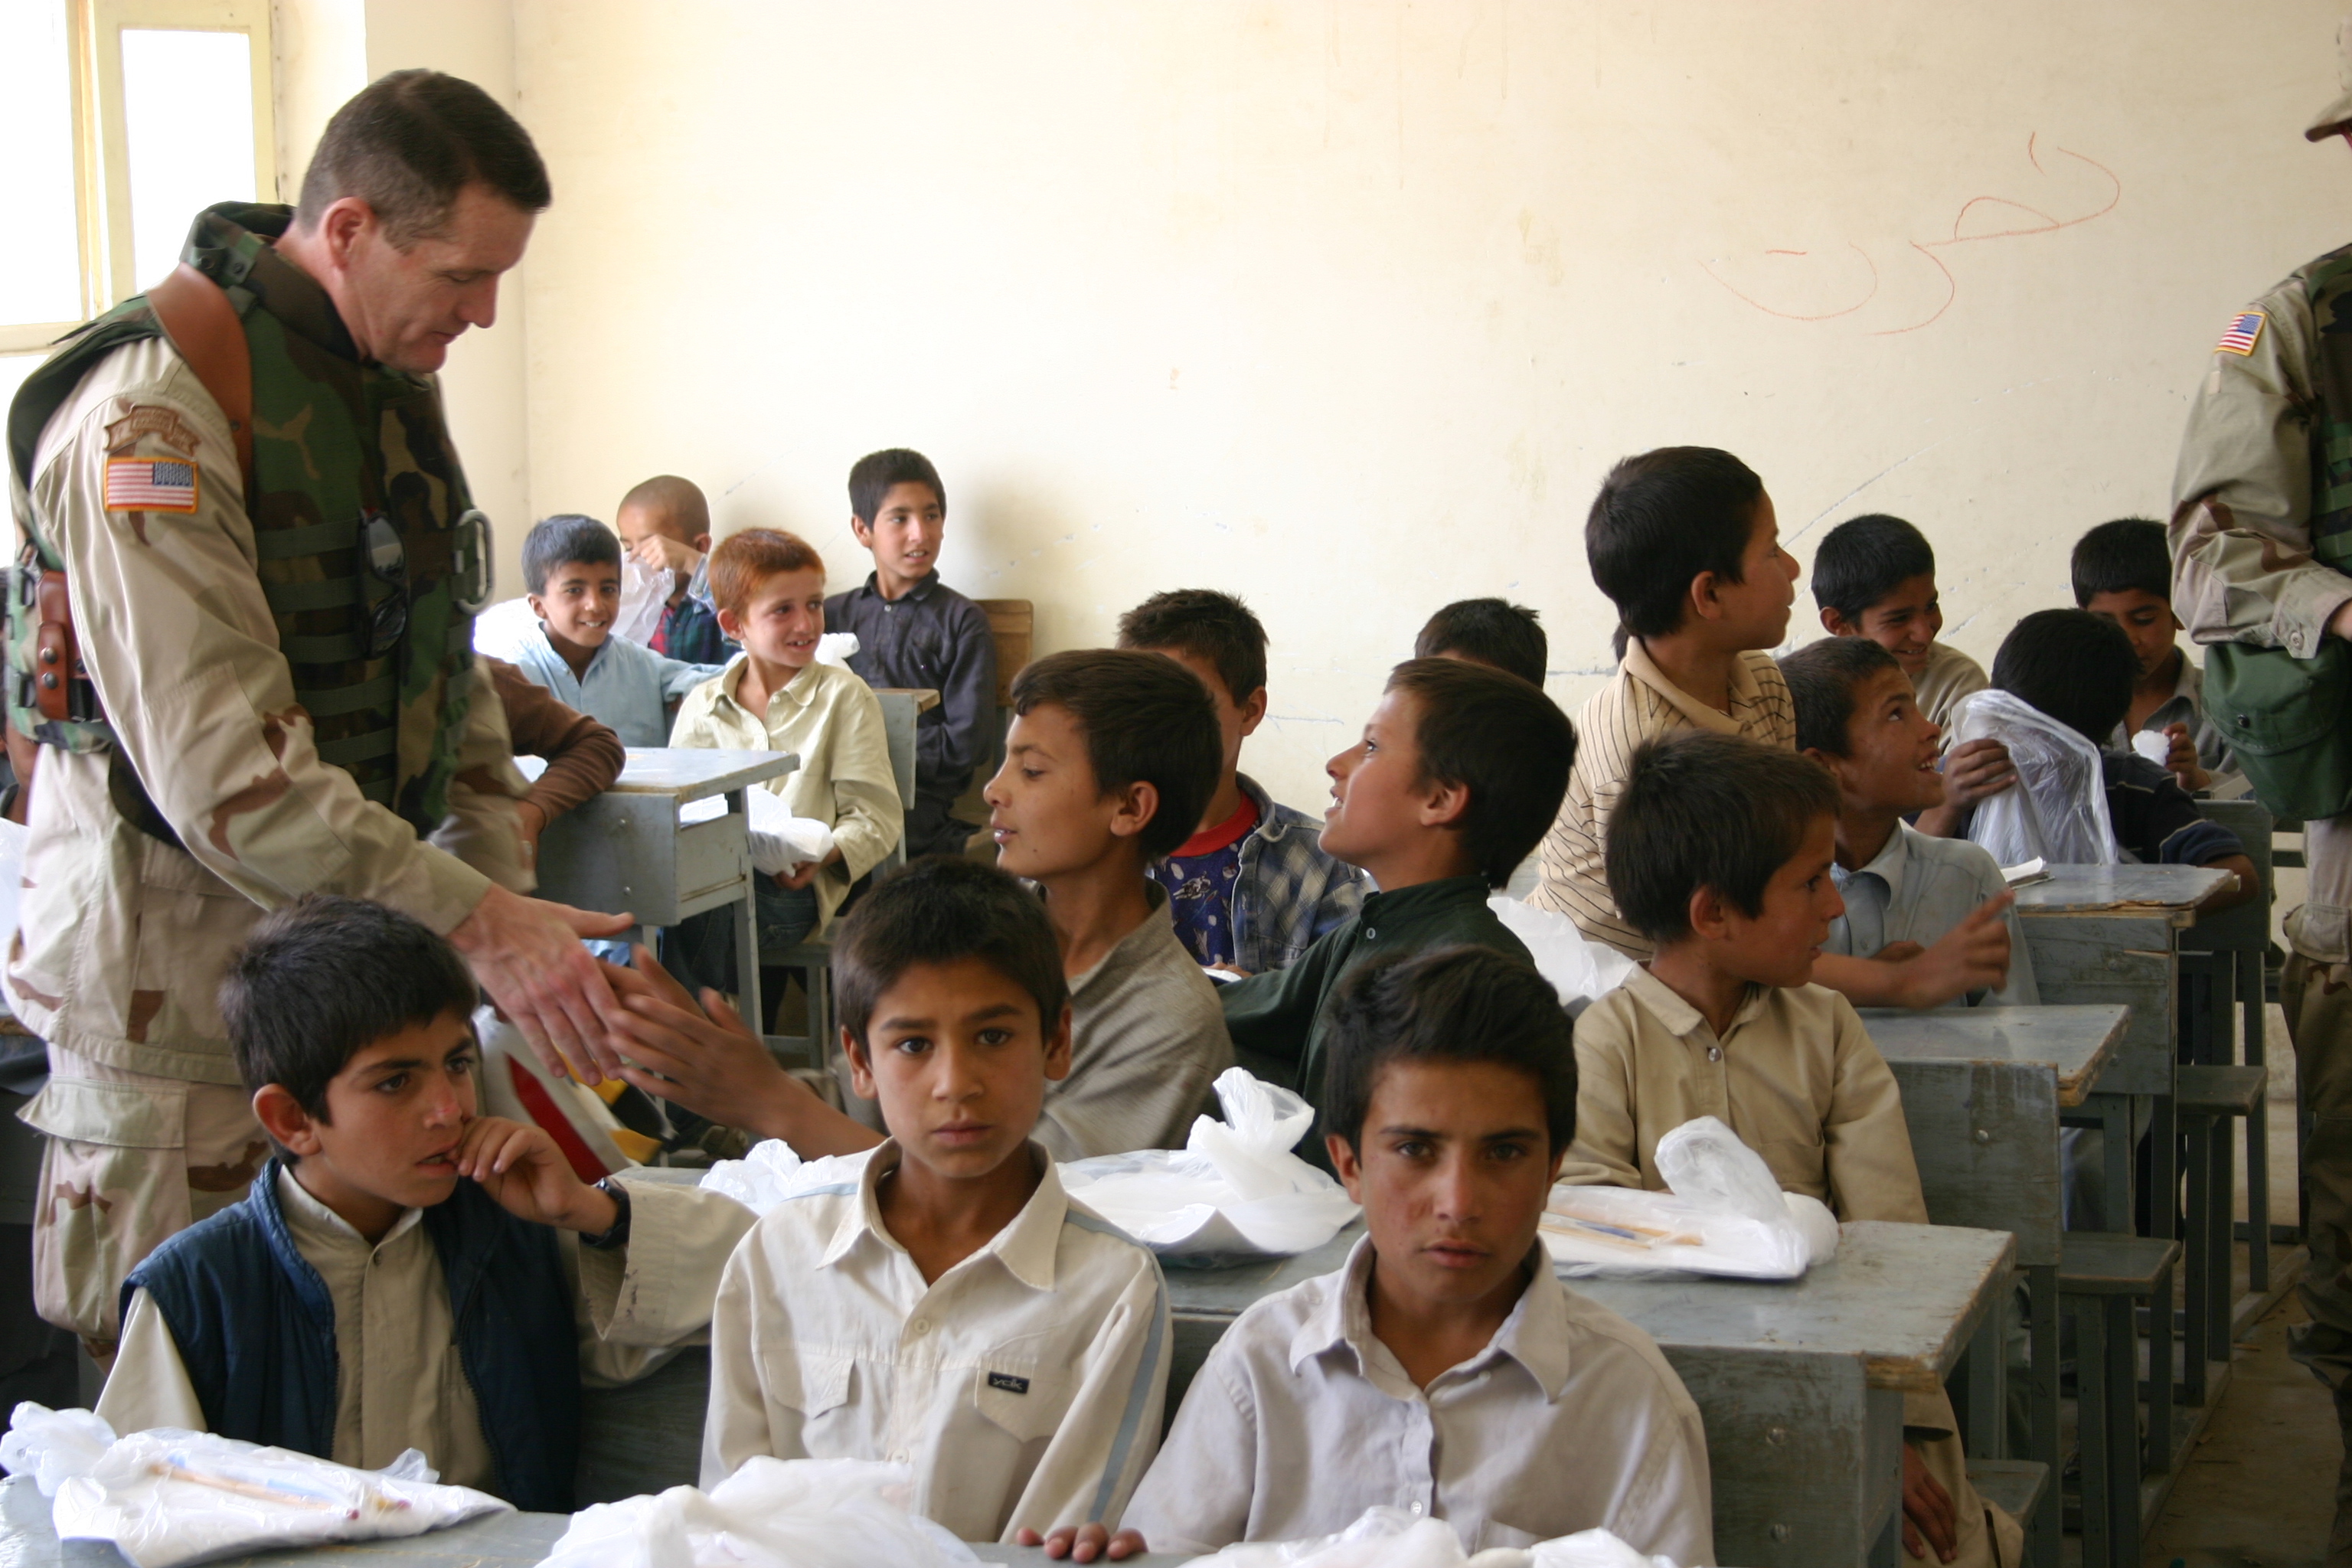 U.S. Army meeting boys school in Afghanistan - 05-30-2004